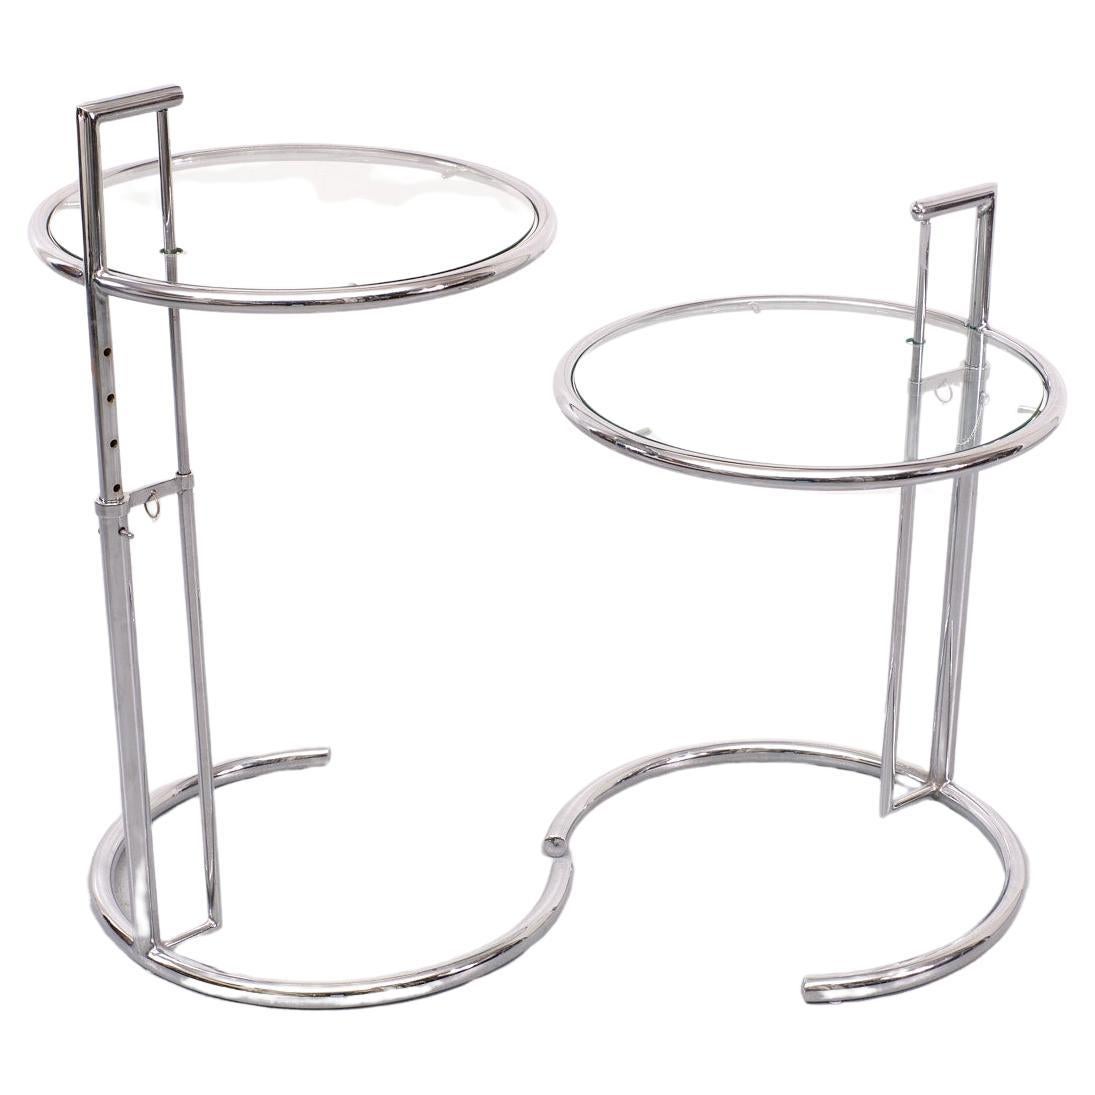 Ces tables d'appoint vintage en acier tubulaire et verre E1027  a été conçu par Eileen Gray en 1926. Le design ingénieux se caractérise par une structure en acier tubulaire chromé et un plateau de table circulaire en verre  La hauteur de la table